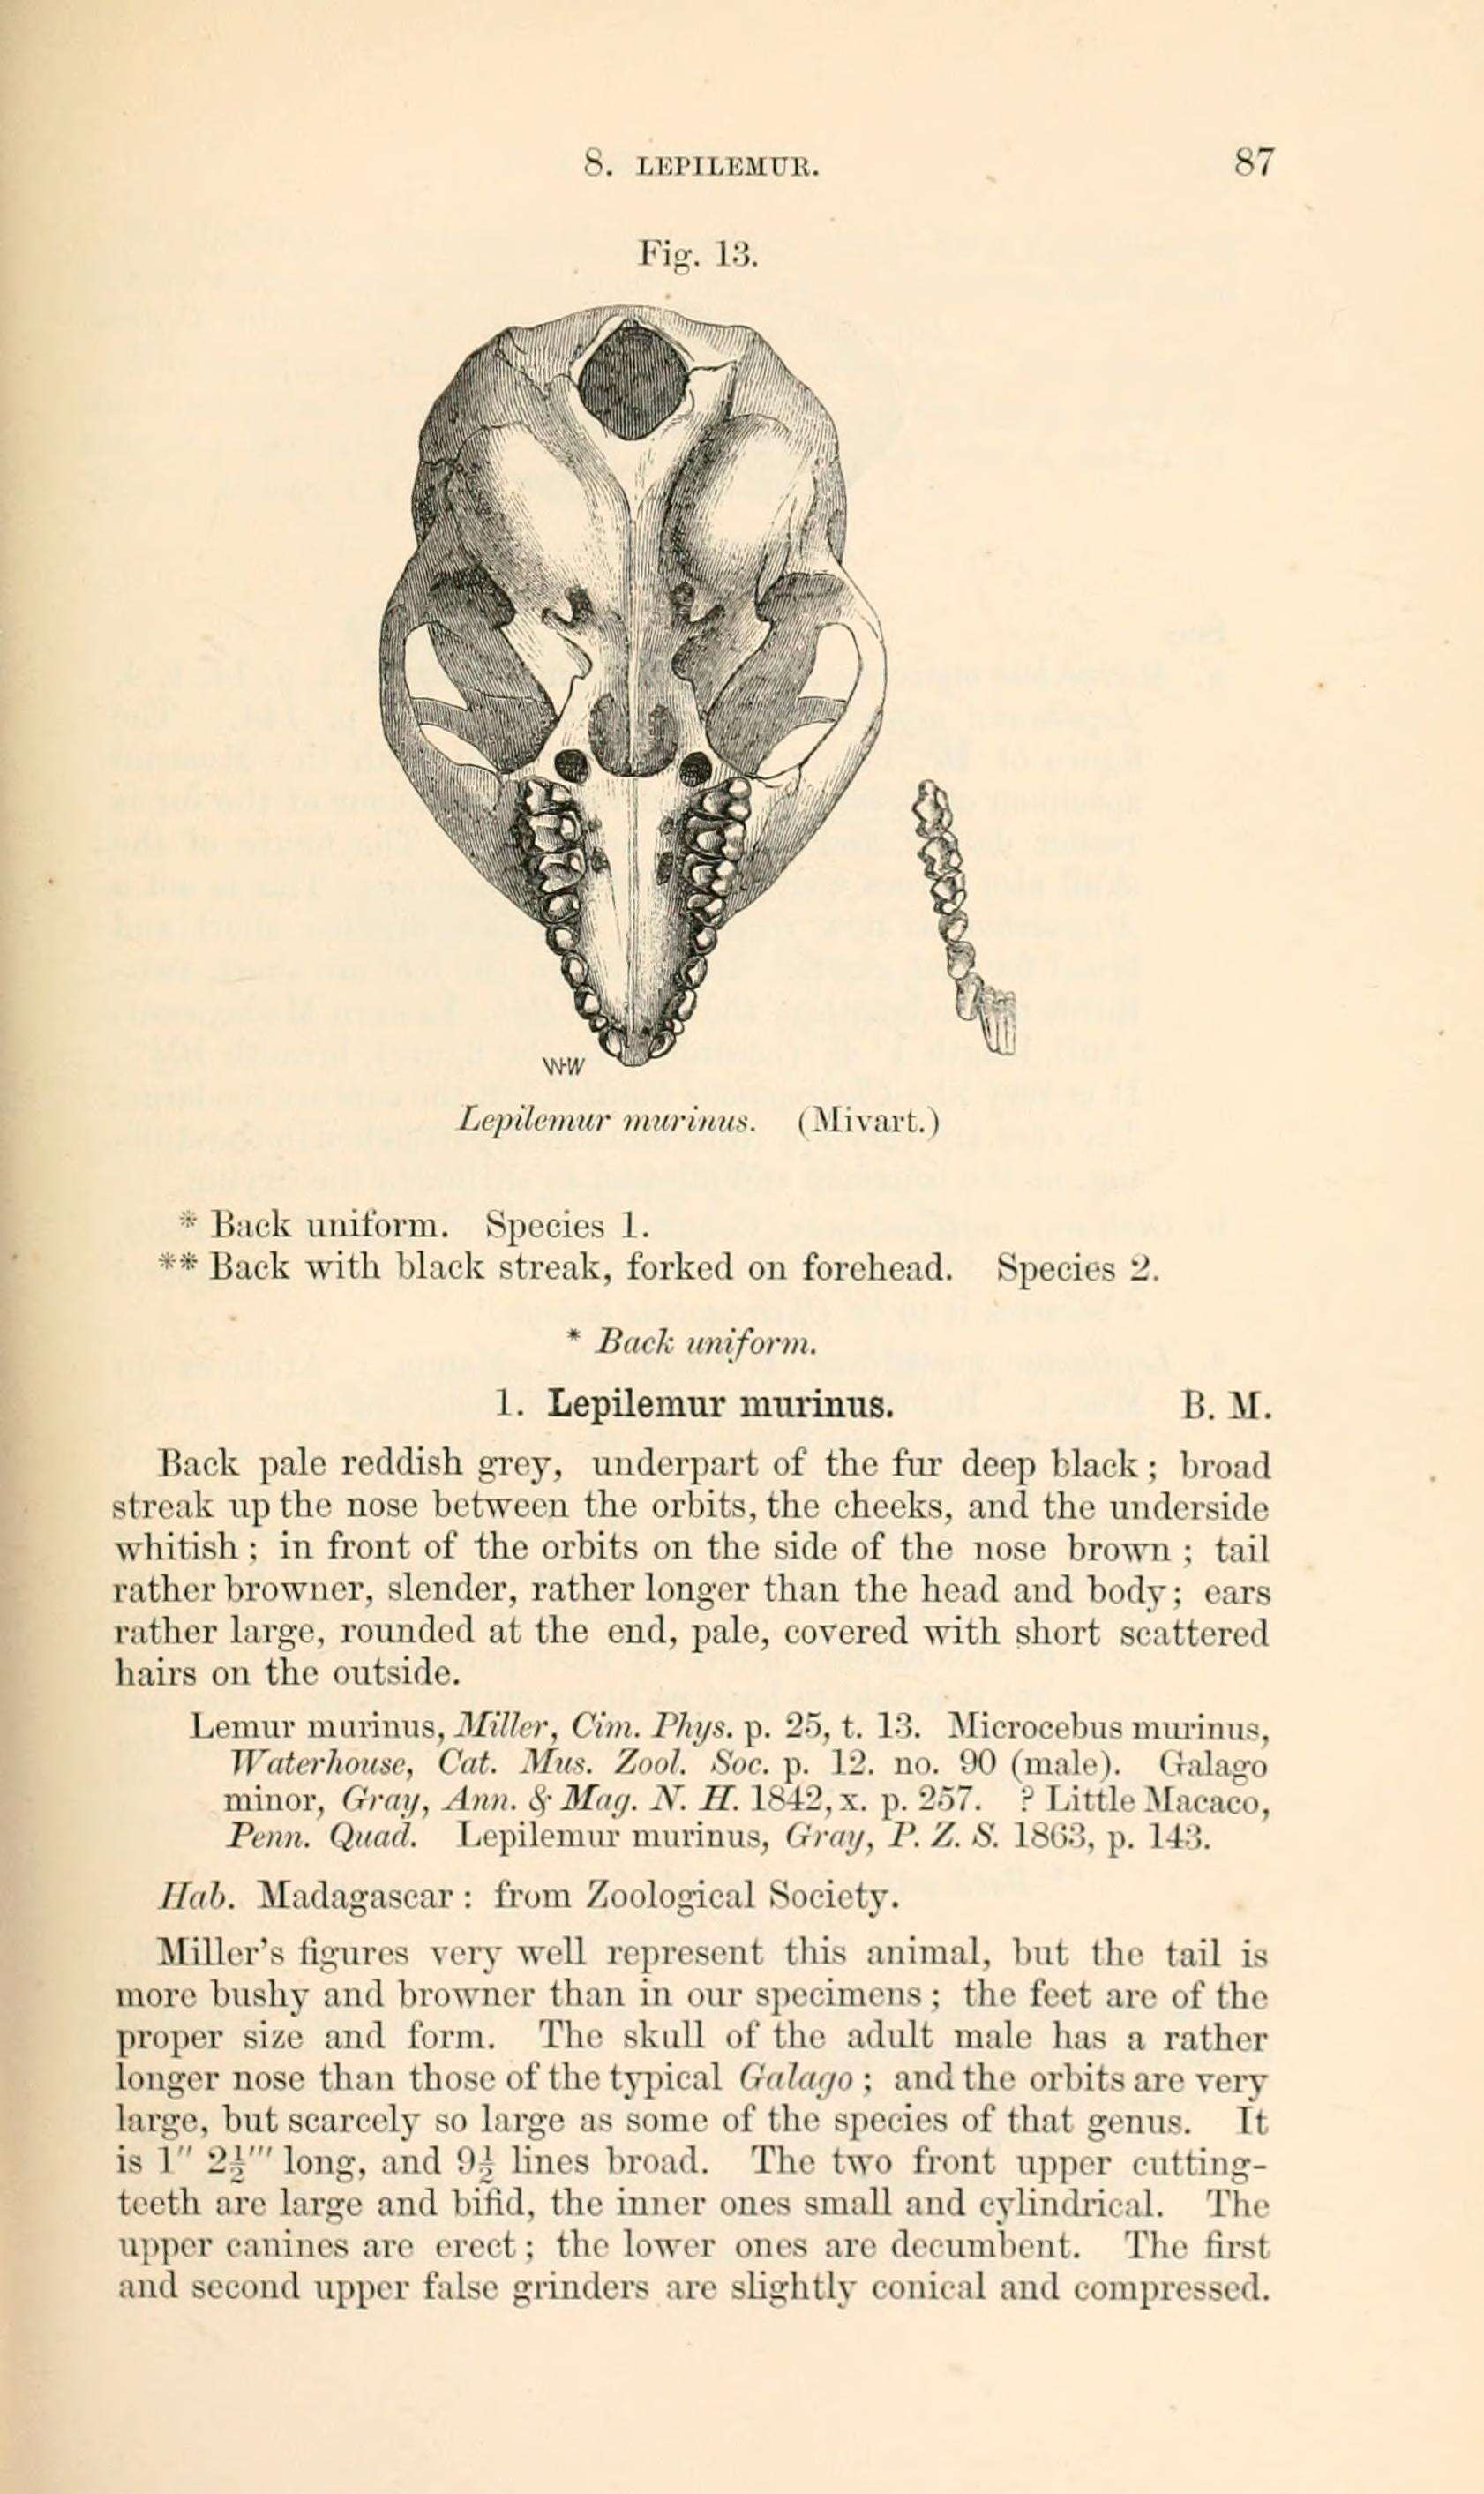 Sivun Lepilemuridae Gray 1870 kuva